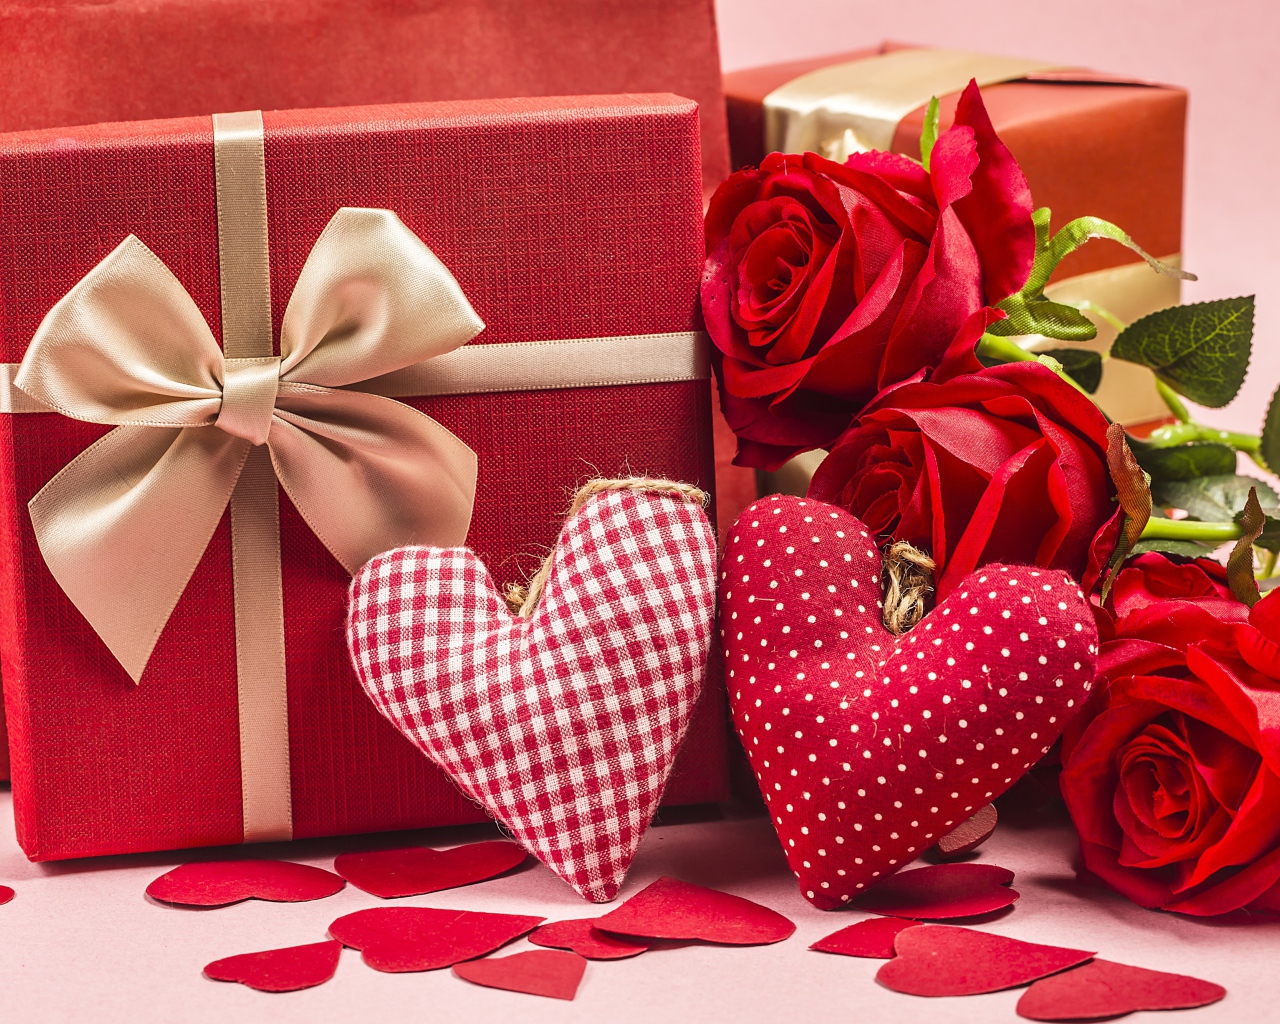 Два подарка с красными розами и тканевыми сердечками